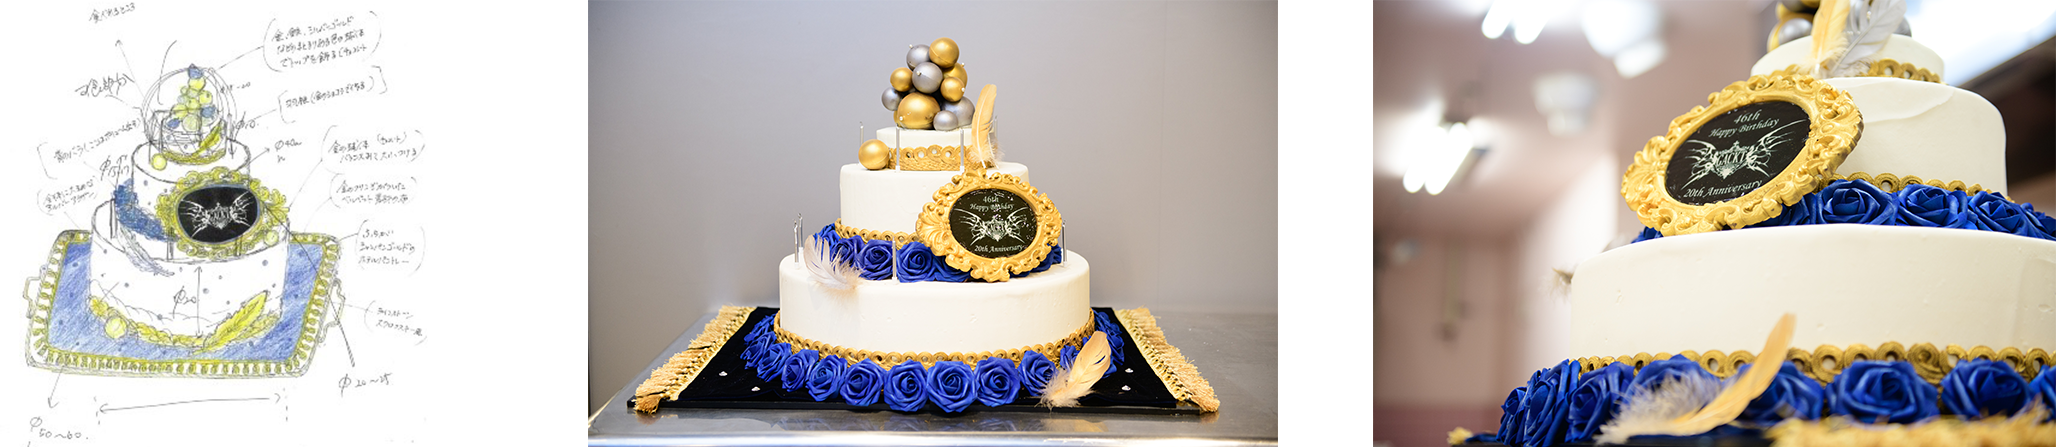 Gacktのバースデーケーキを学生が製作ソロデビュー周年 46歳バースデーライブにて提供 インディー